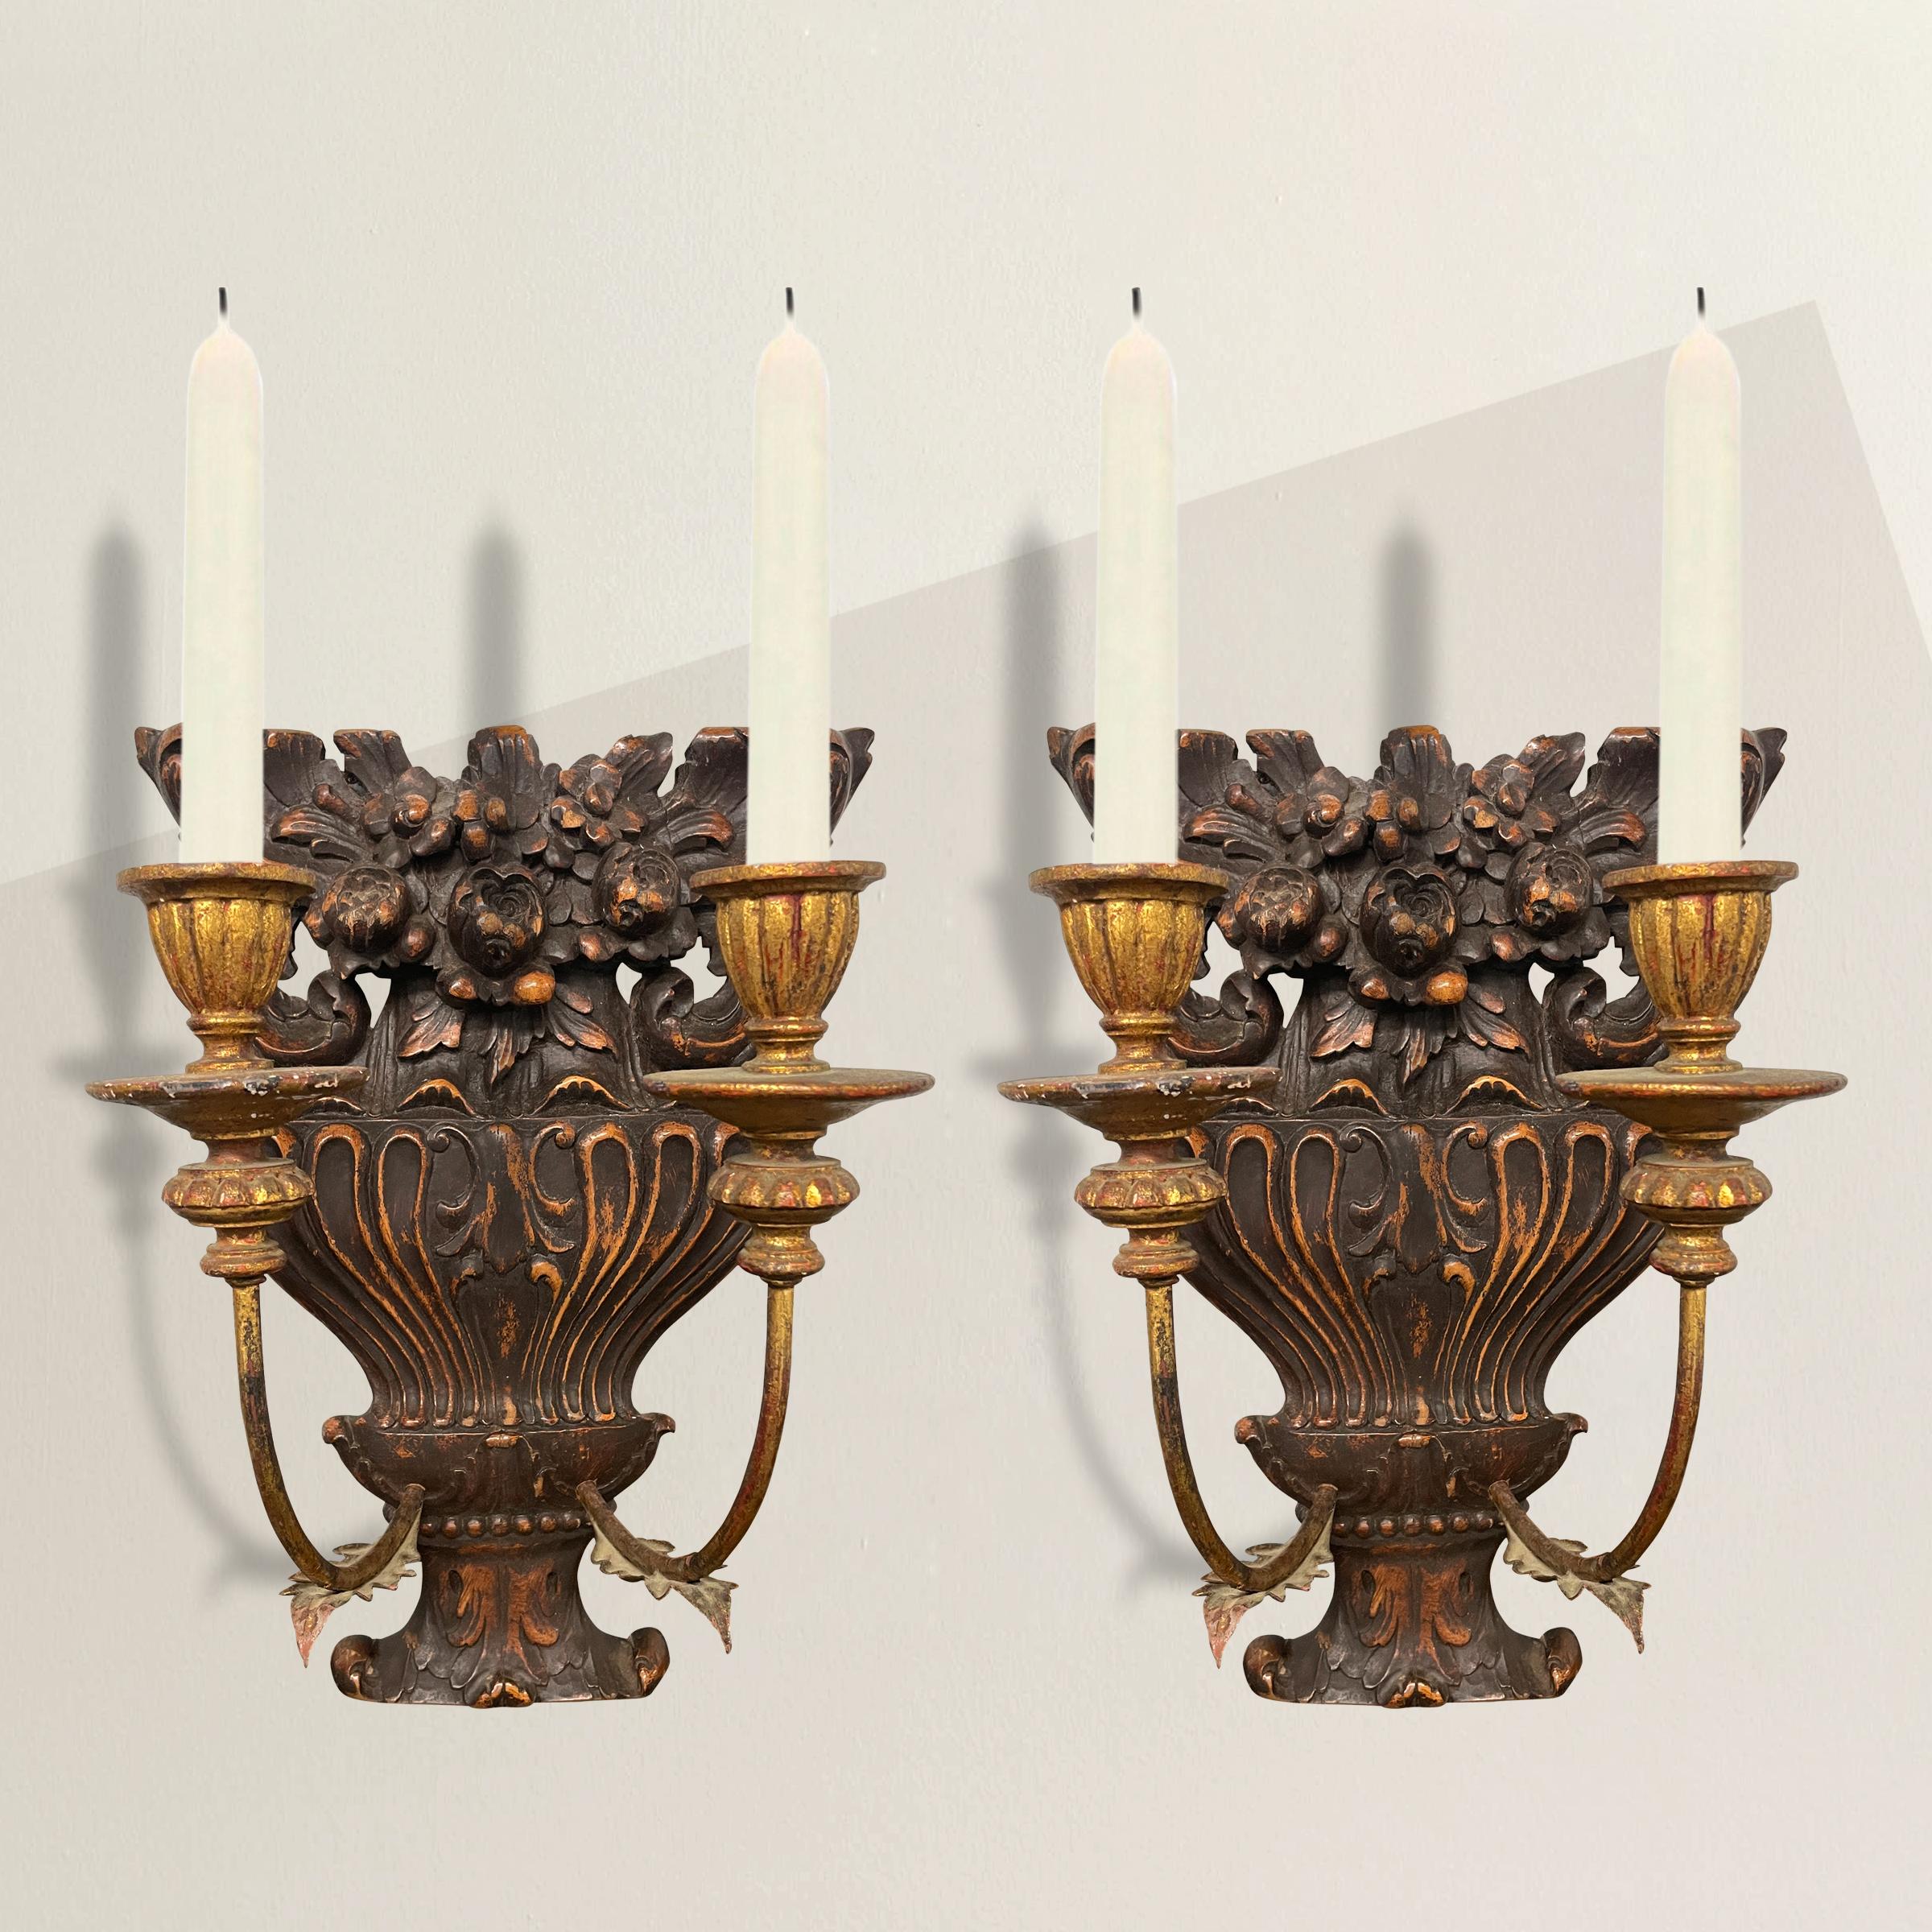 Une charmante paire d'appliques à bougies françaises du milieu du 19e siècle avec des plaques de fond sculptées en forme d'urne fleurie, et des bras en métal doré et en bois. Les appliques peuvent être électrifiées moyennant des frais